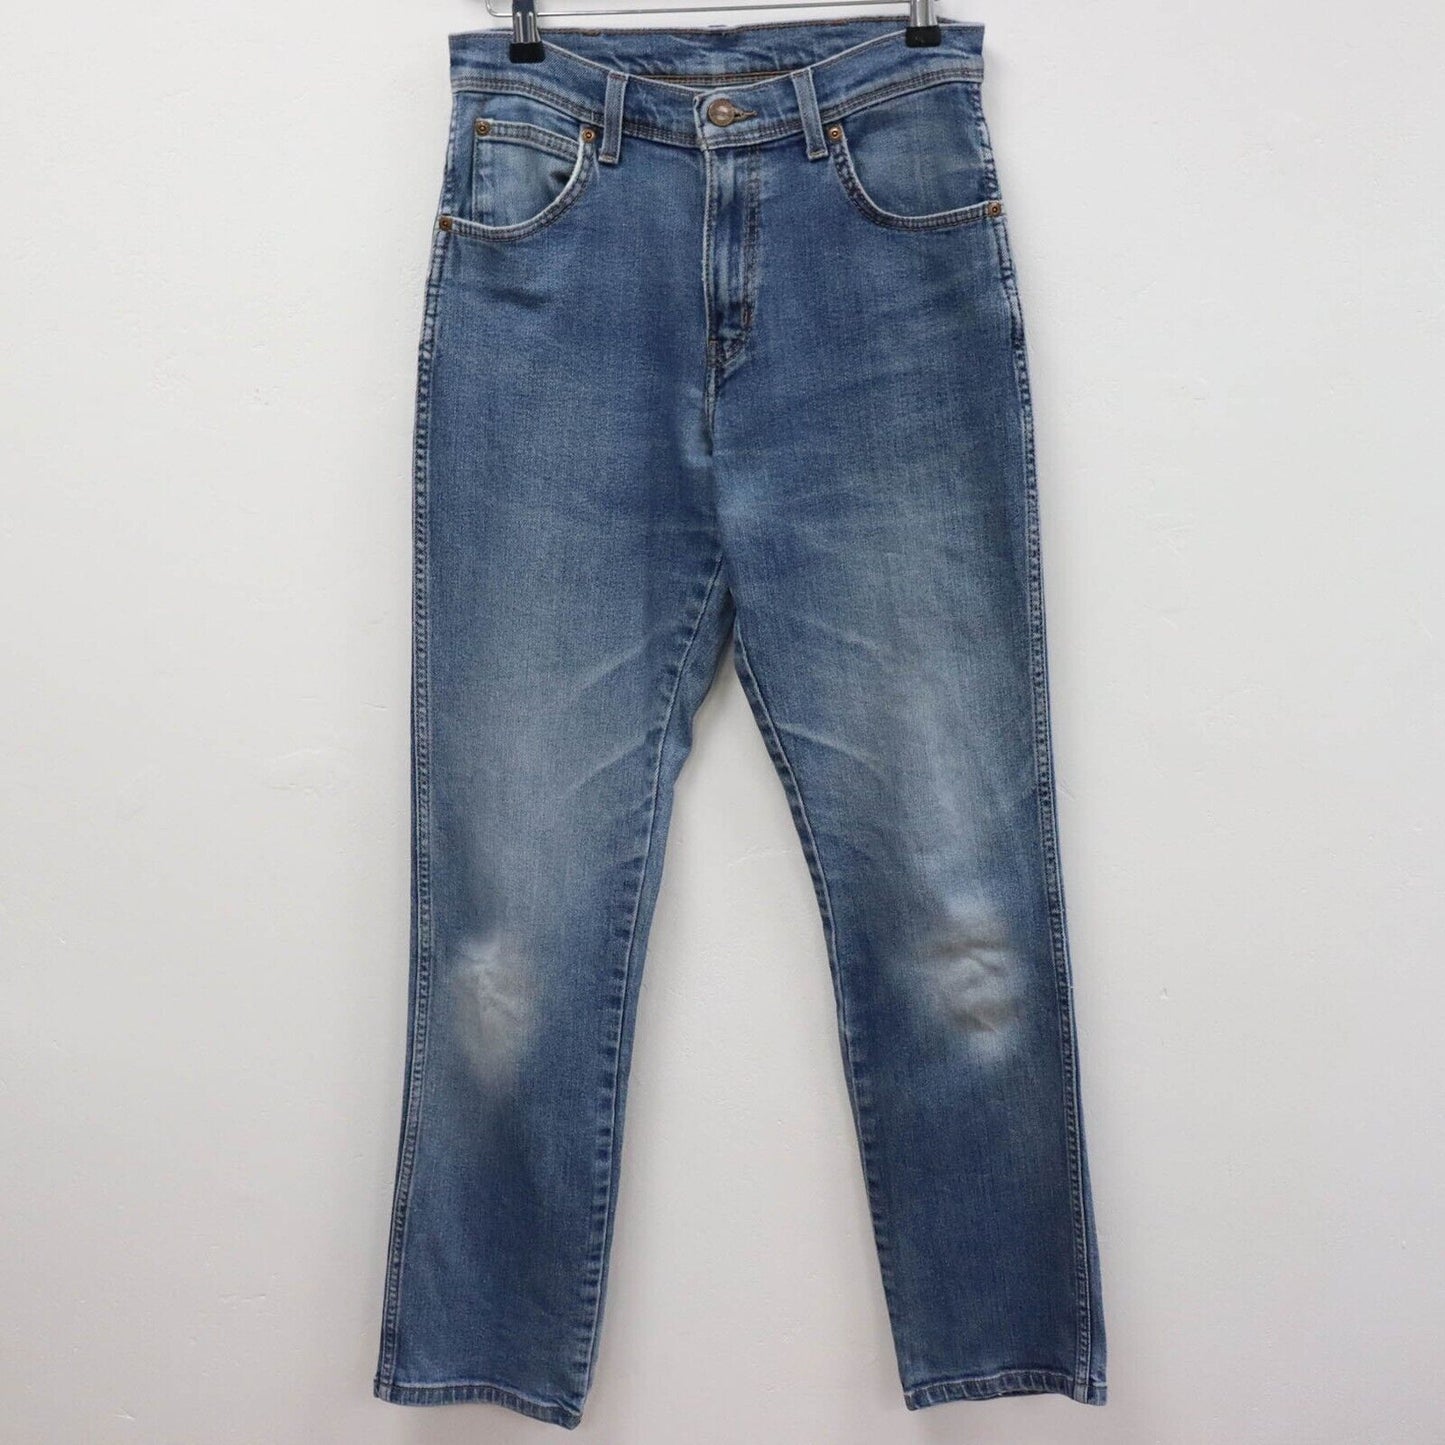 90s Wrangler Straight Leg Jeans Size UK10 L31